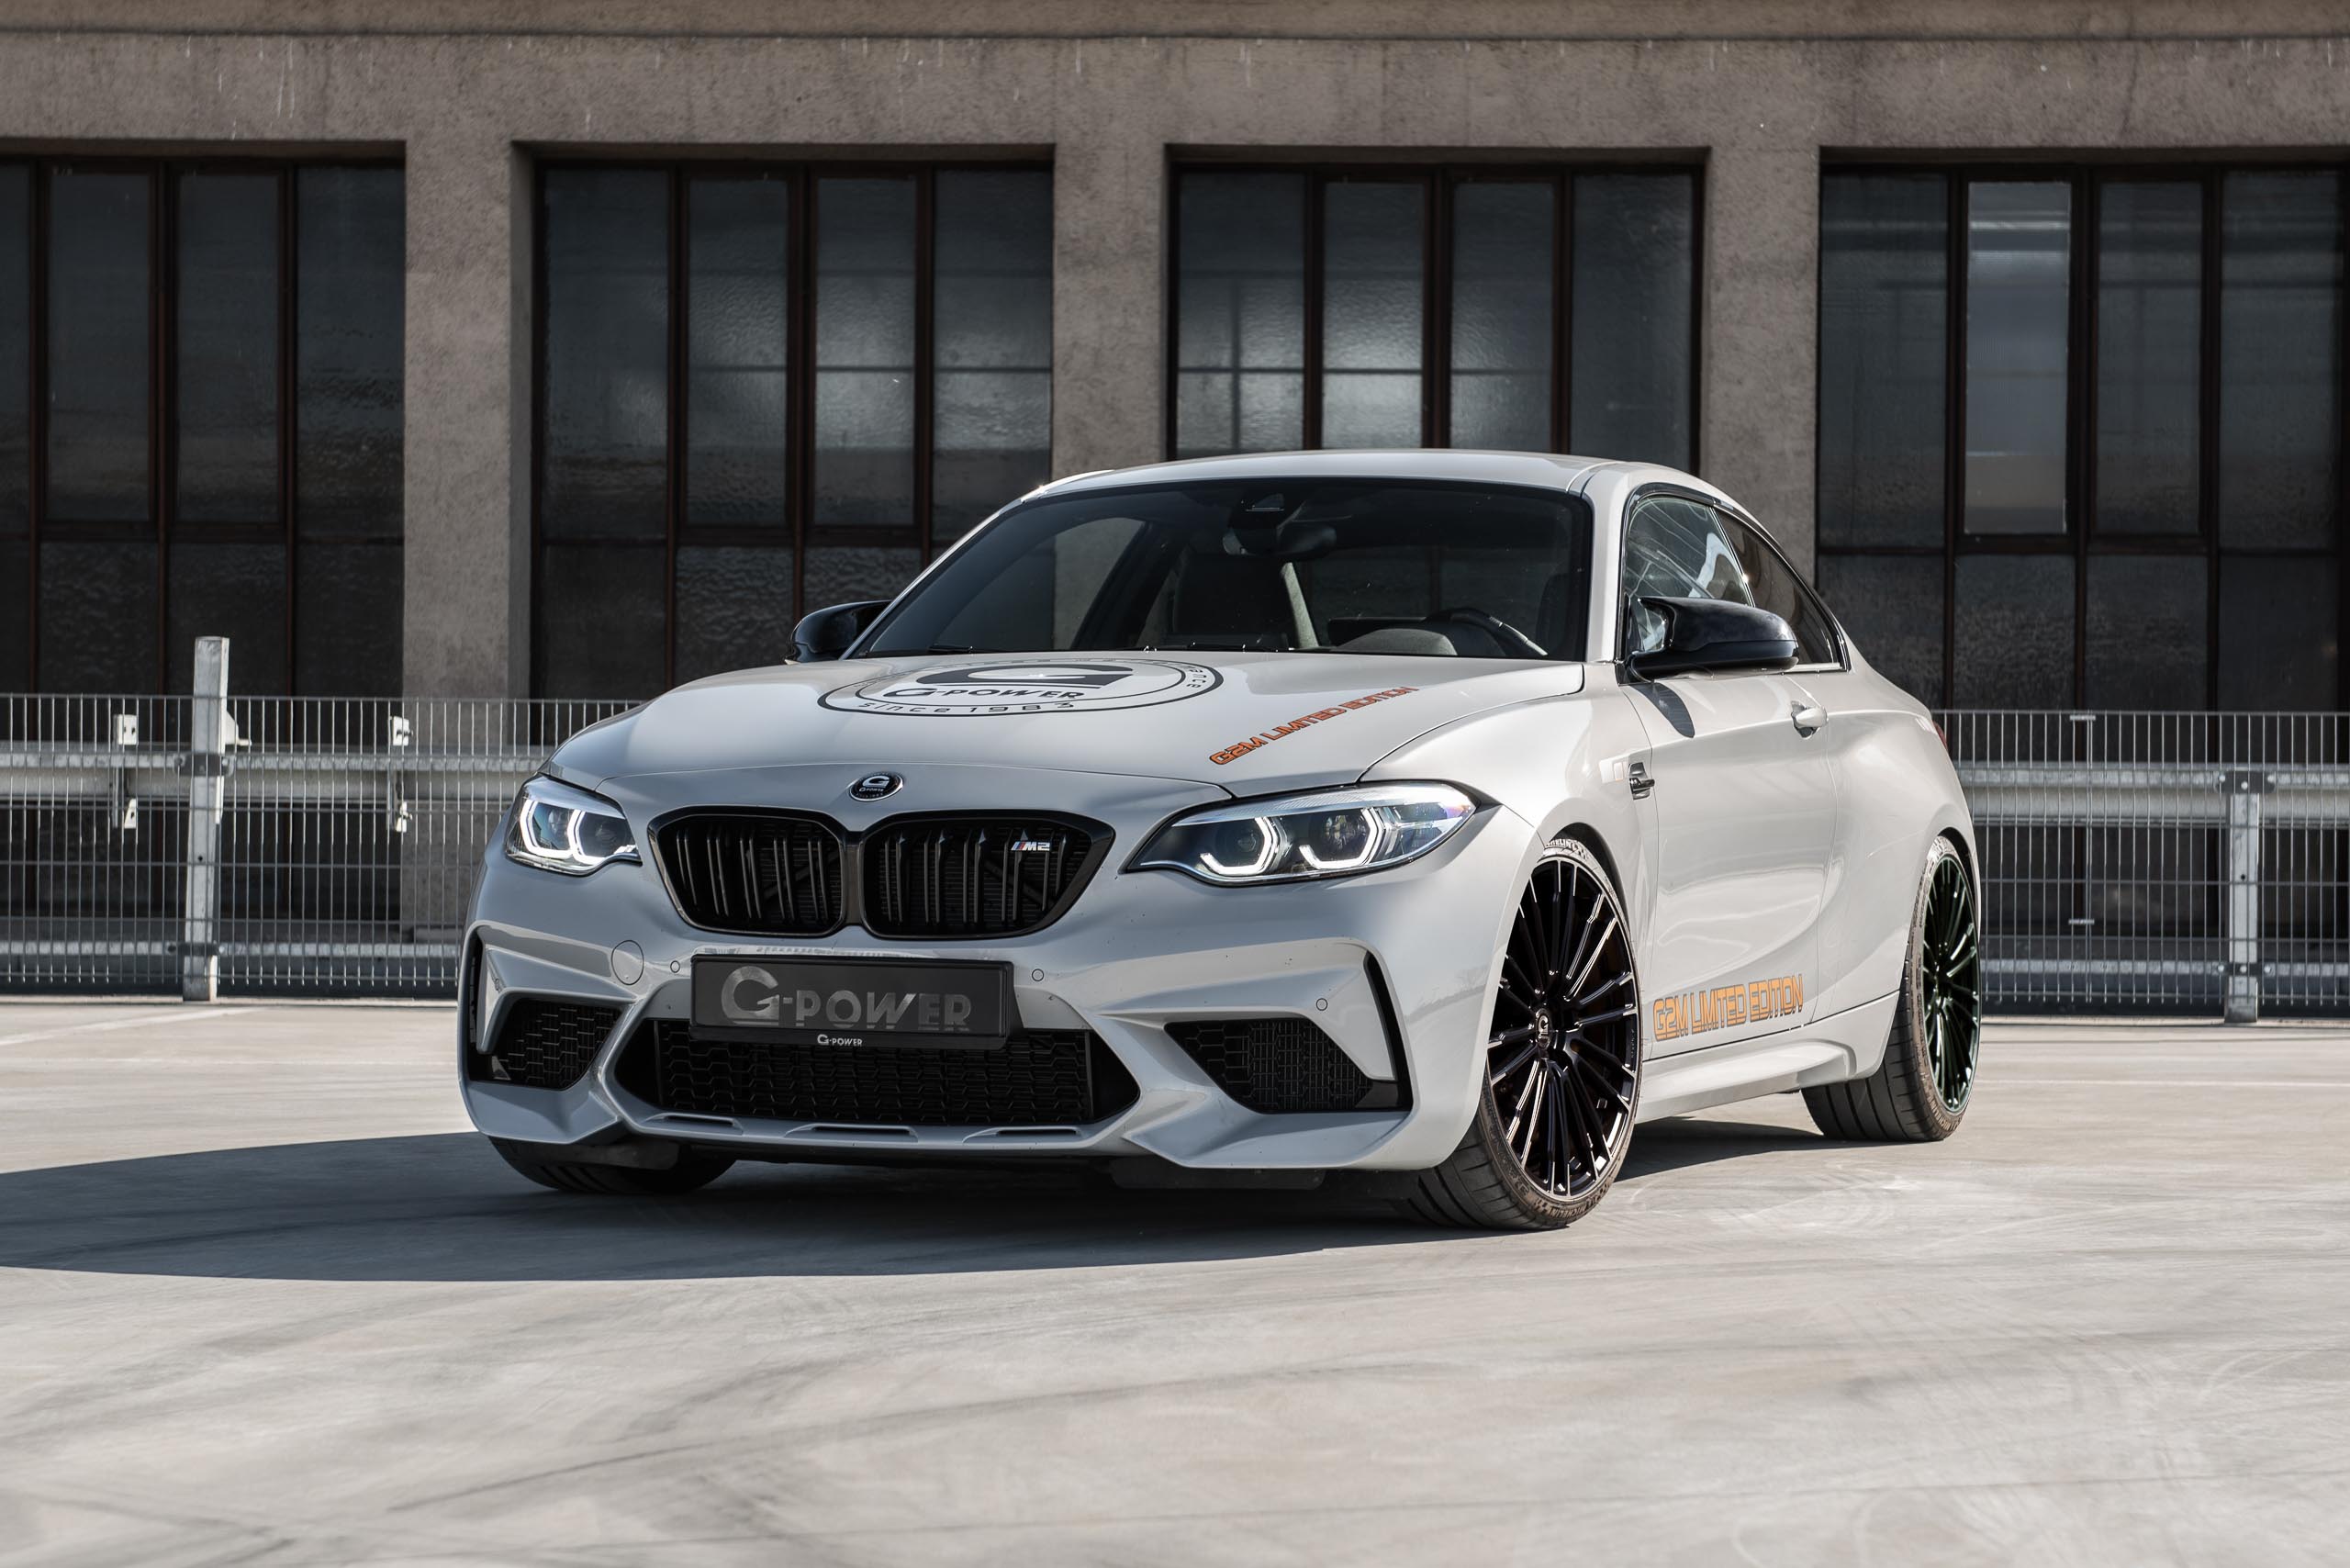 2021 BMW | G-Power G2M | Fanaticar Magazin